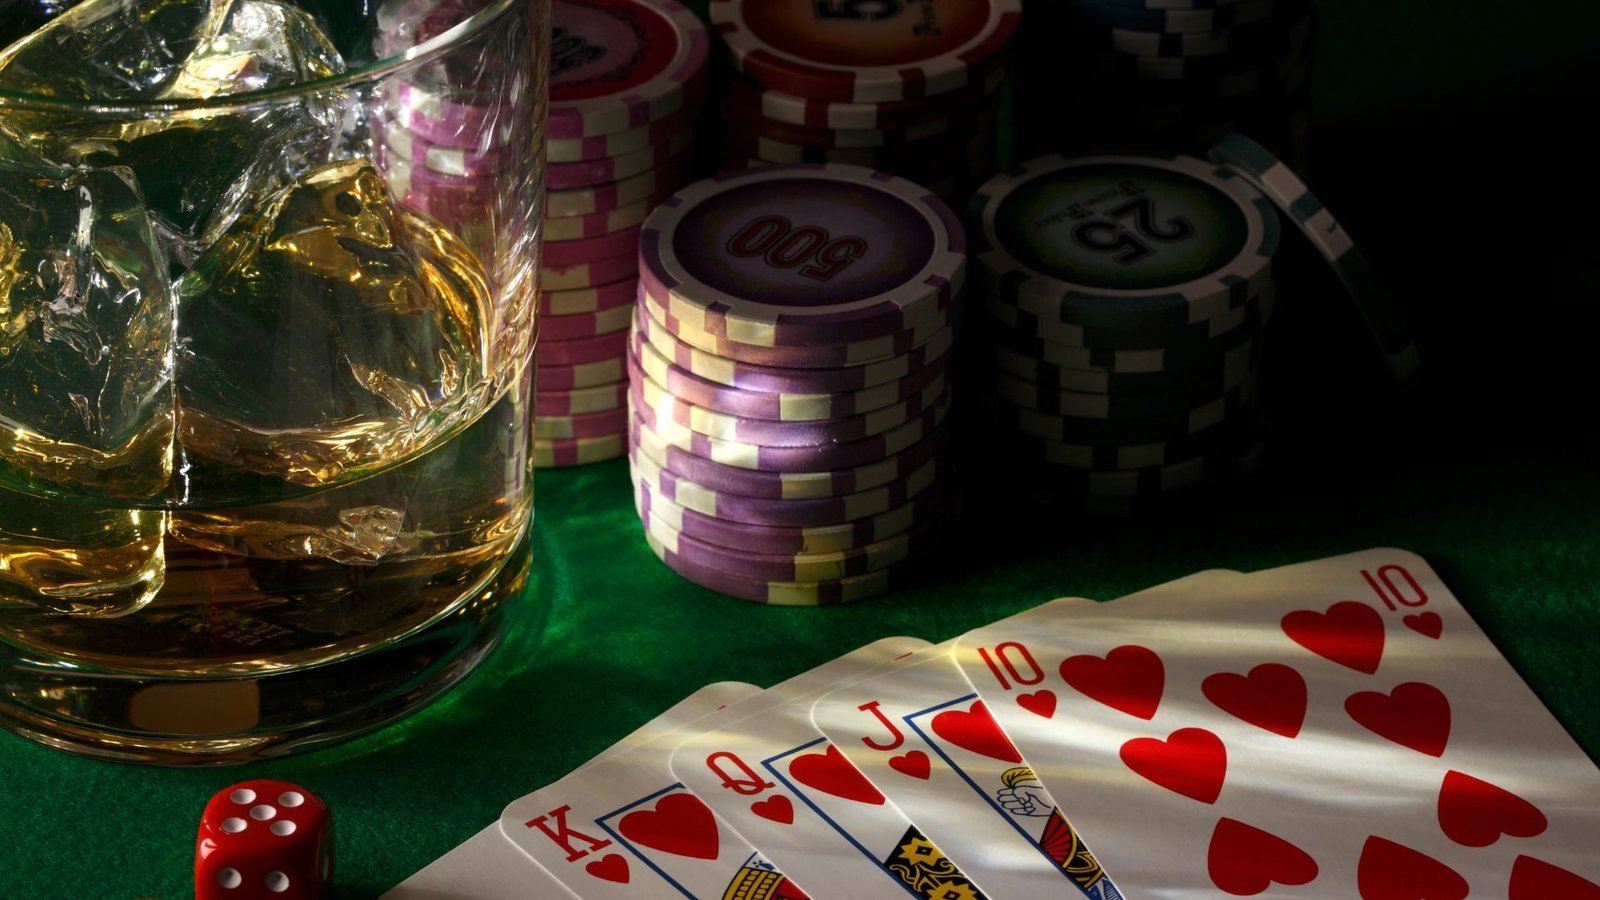 video-poker-games-play-video-poker-video-poker-machine-online-video